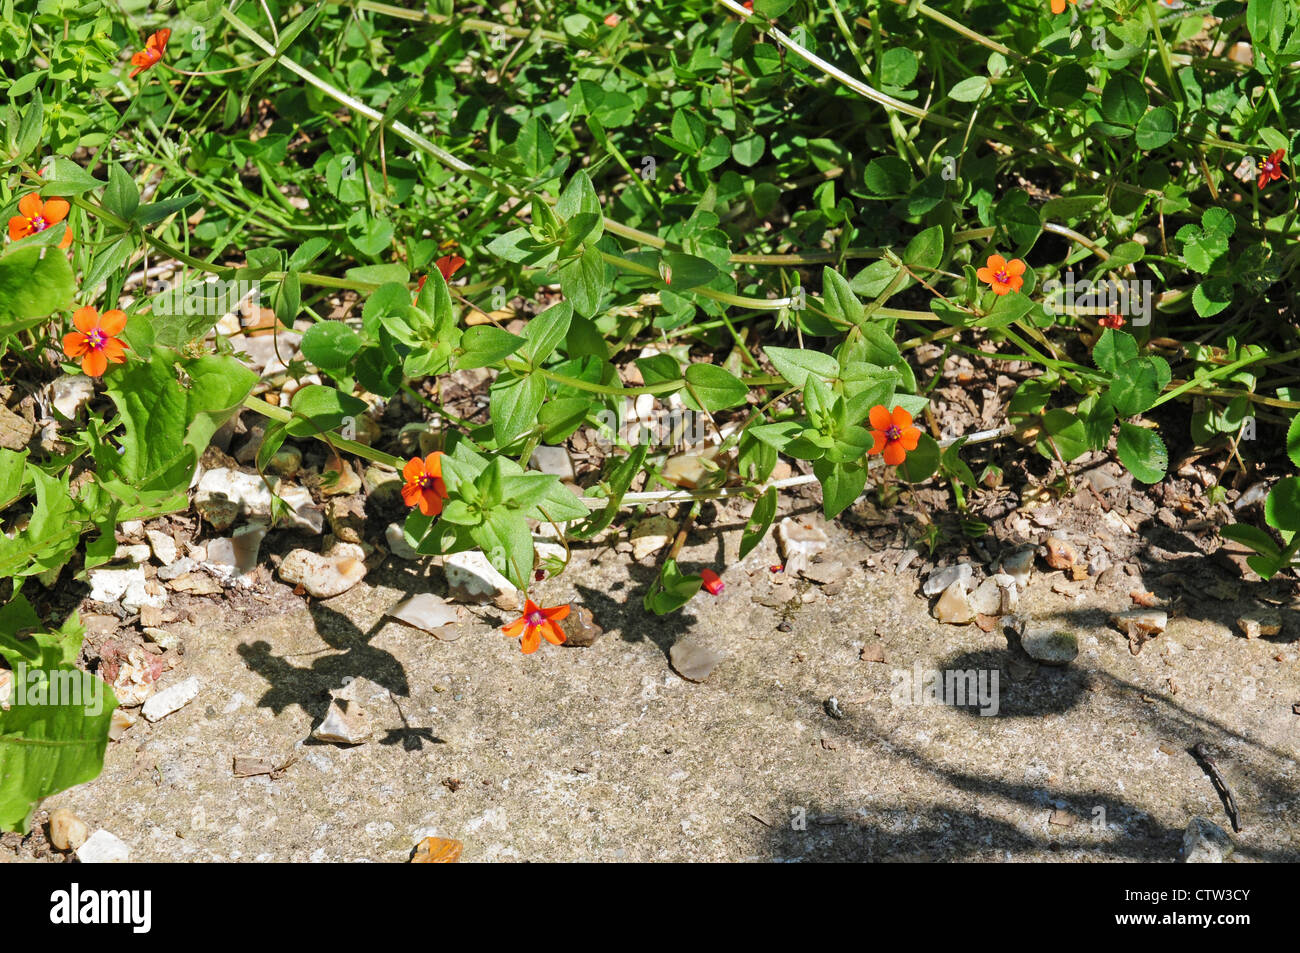 Scarlet Pimpernel Anagallis arvensis. Stock Photo